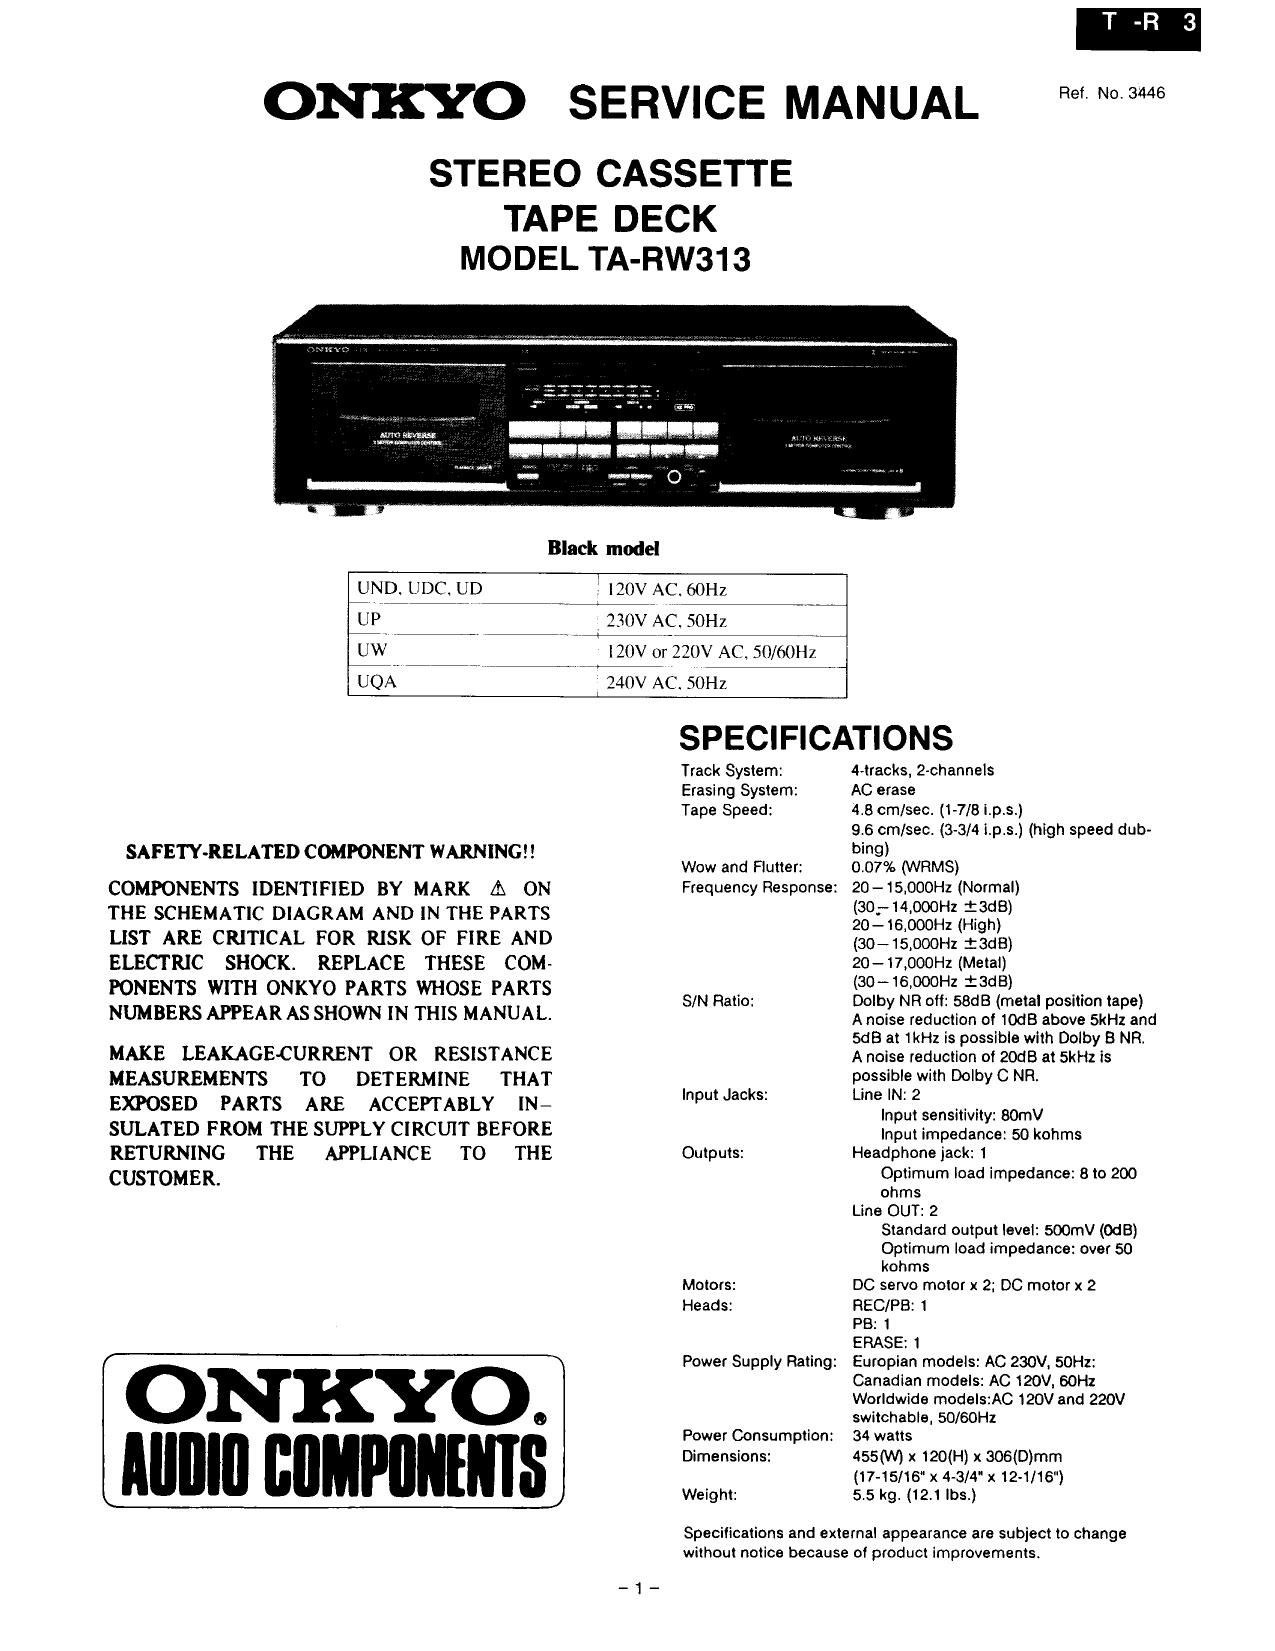 Onkyo TARW 313 Service Manual